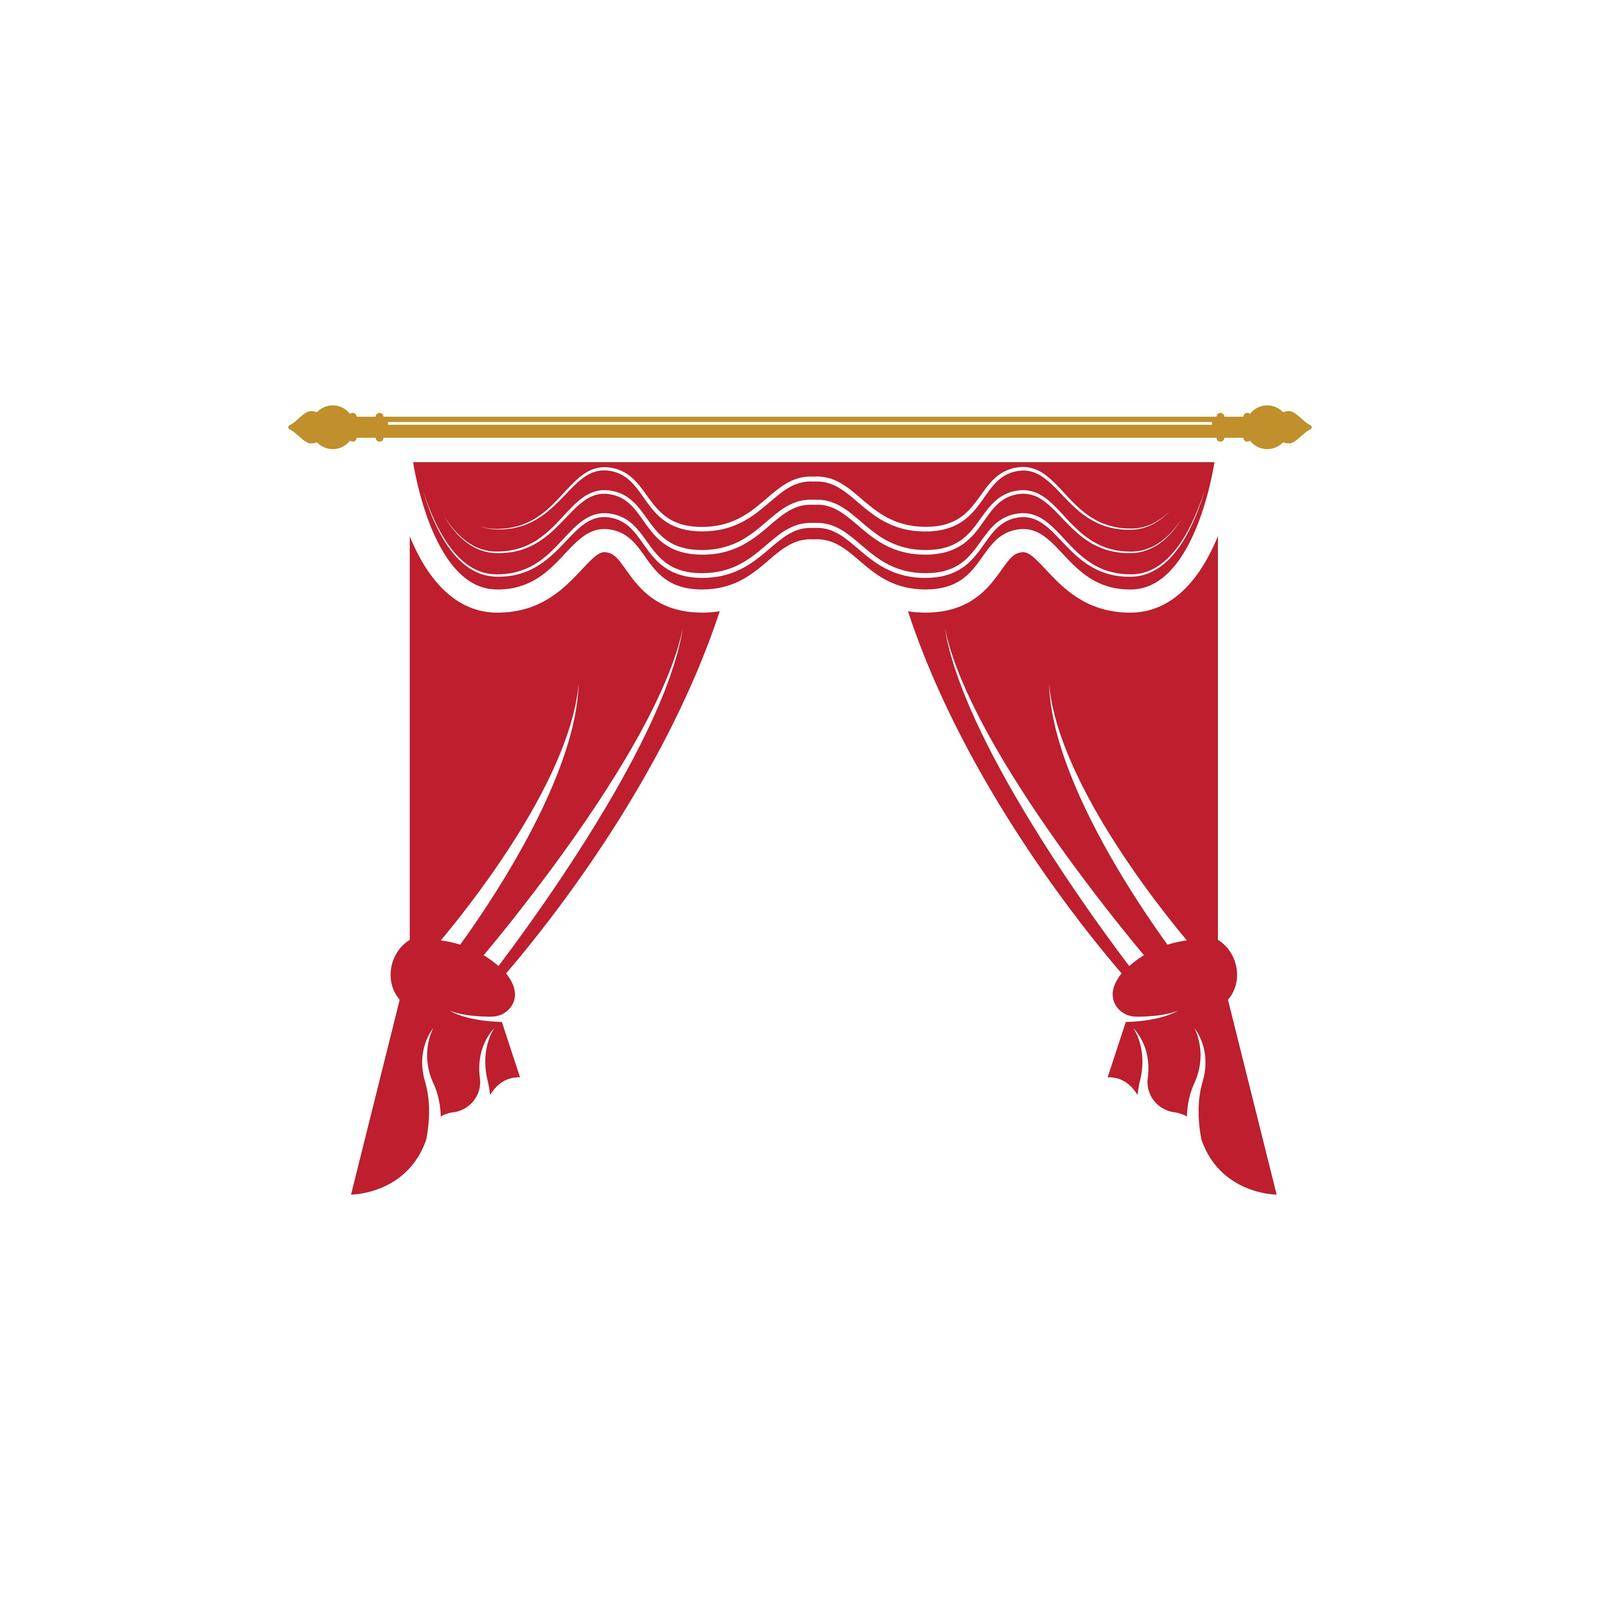 Red curtain cornice decor domestic fabric interior drapery textile lambrequin, vector illustration curtaine